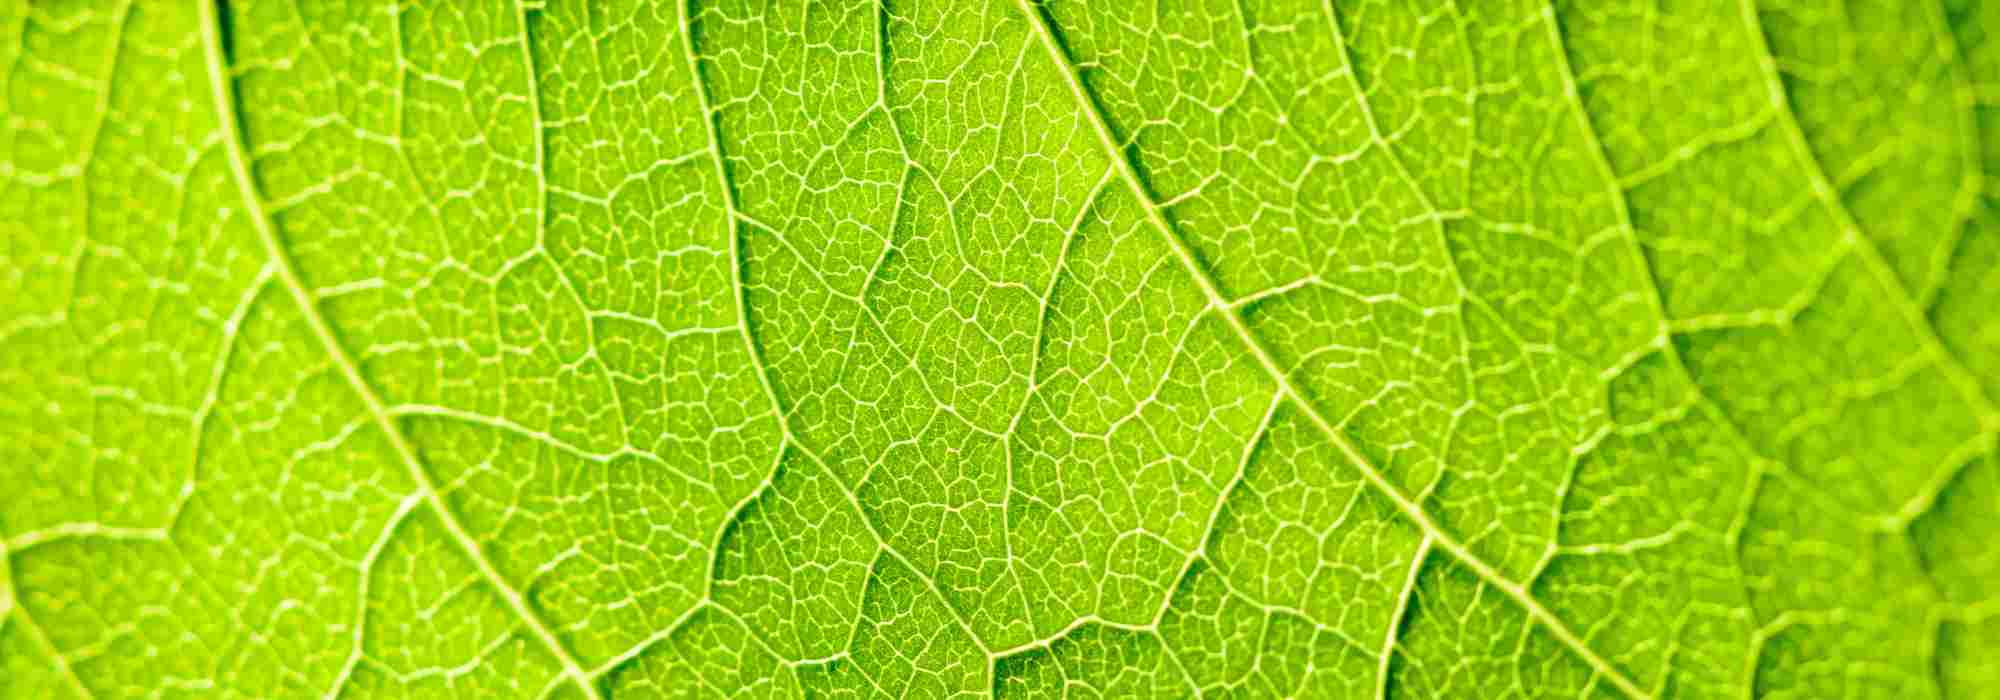 La respiration des plantes : un processus complexe et fascinant